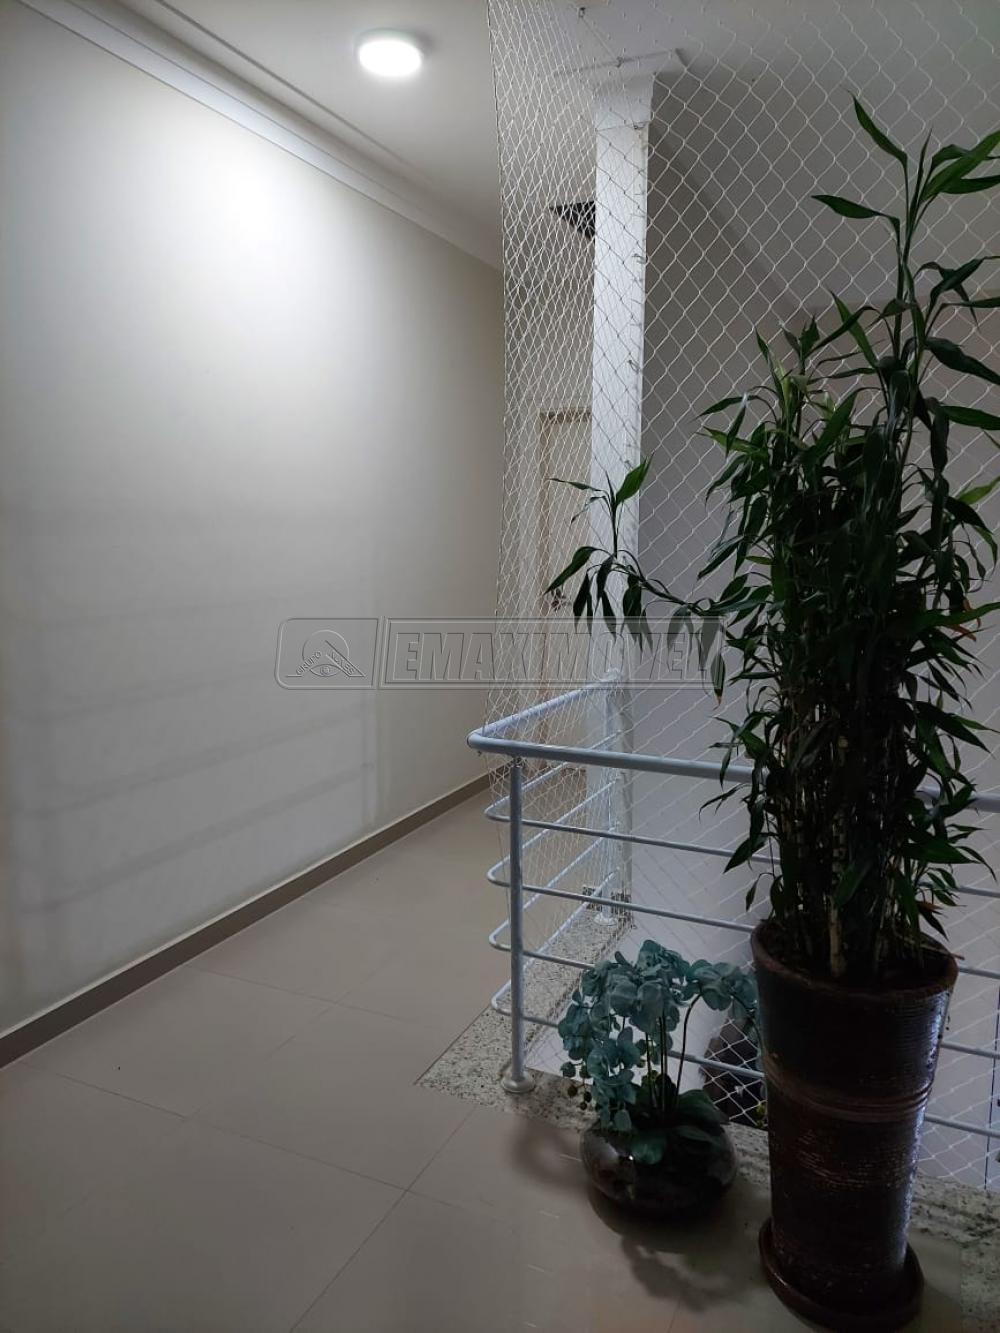 Comprar Casa / em Condomínios em Sorocaba R$ 880.000,00 - Foto 11